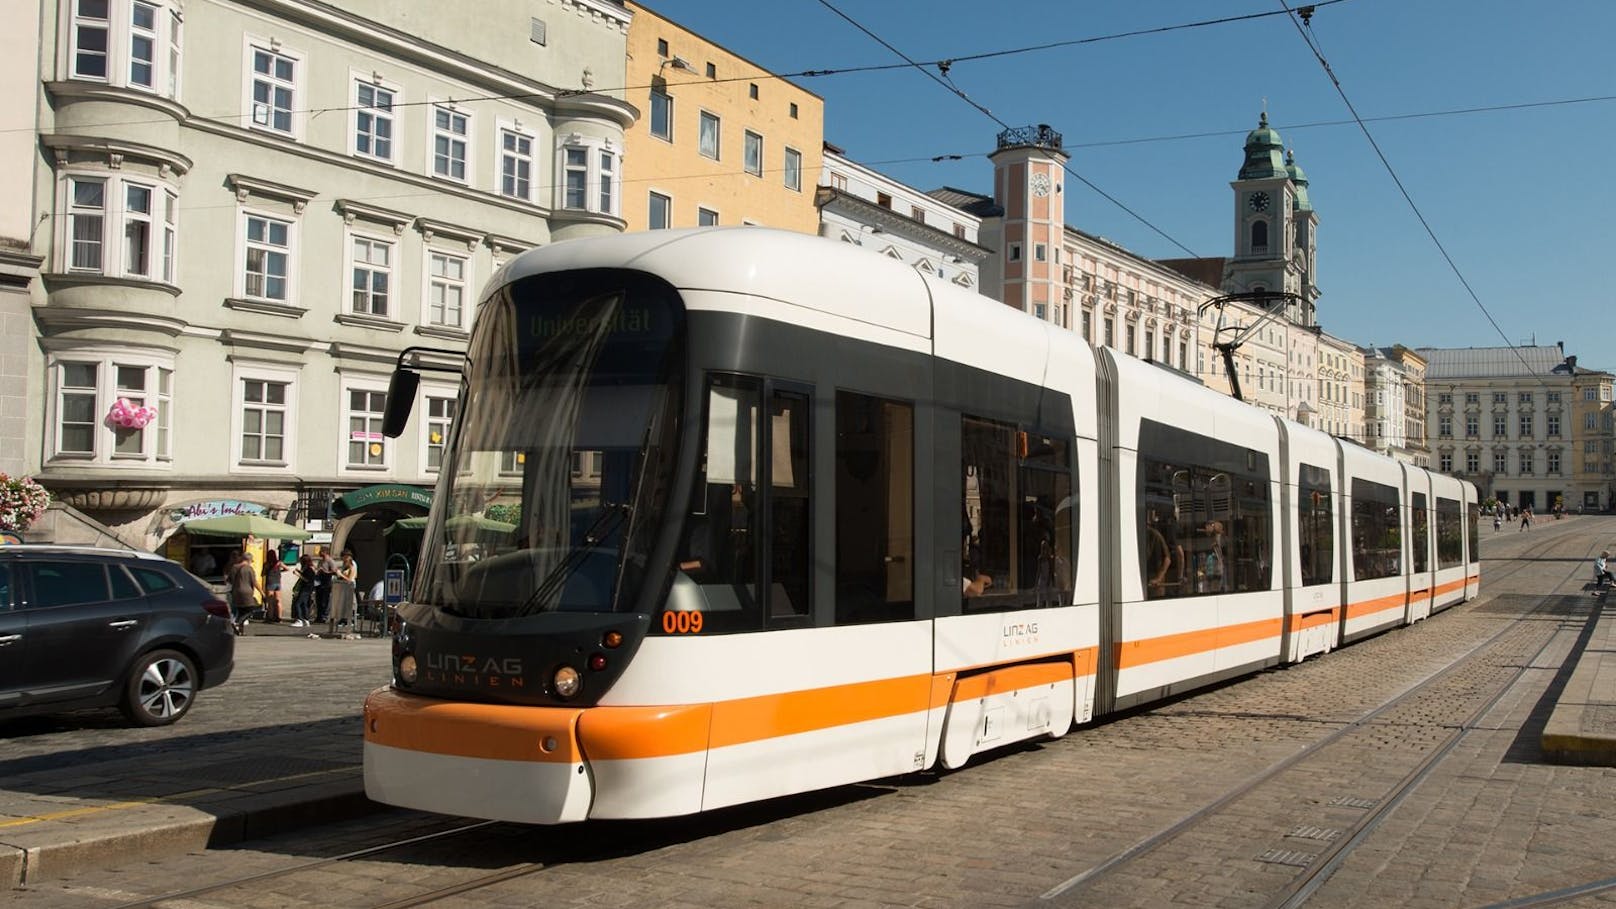 Zwei Wochen lang gilt die Sommeraktion der Linz AG Linien gemeinsam mit fünf weiteren städtischen Verkehrsbetrieben.